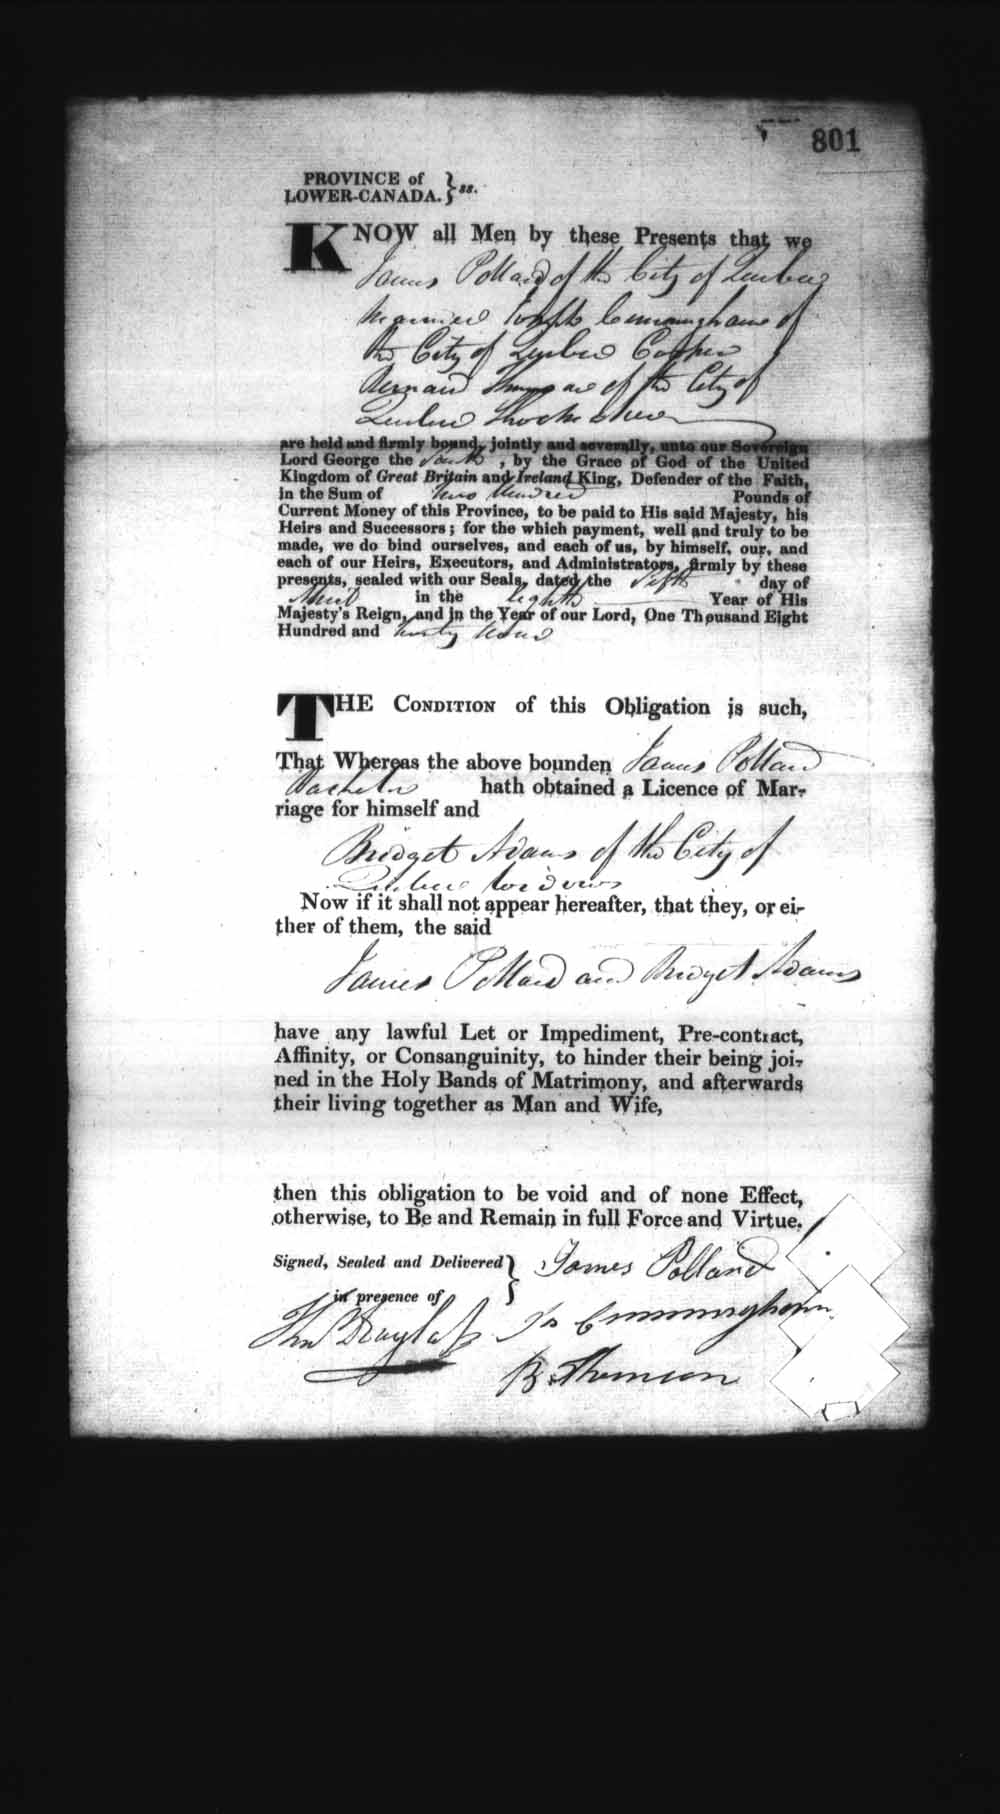 Page numérisé de Cautionnements de mariages pour le Haut-Canada et le Bas-Canada (1779-1865) pour l'image numéro: e008236877